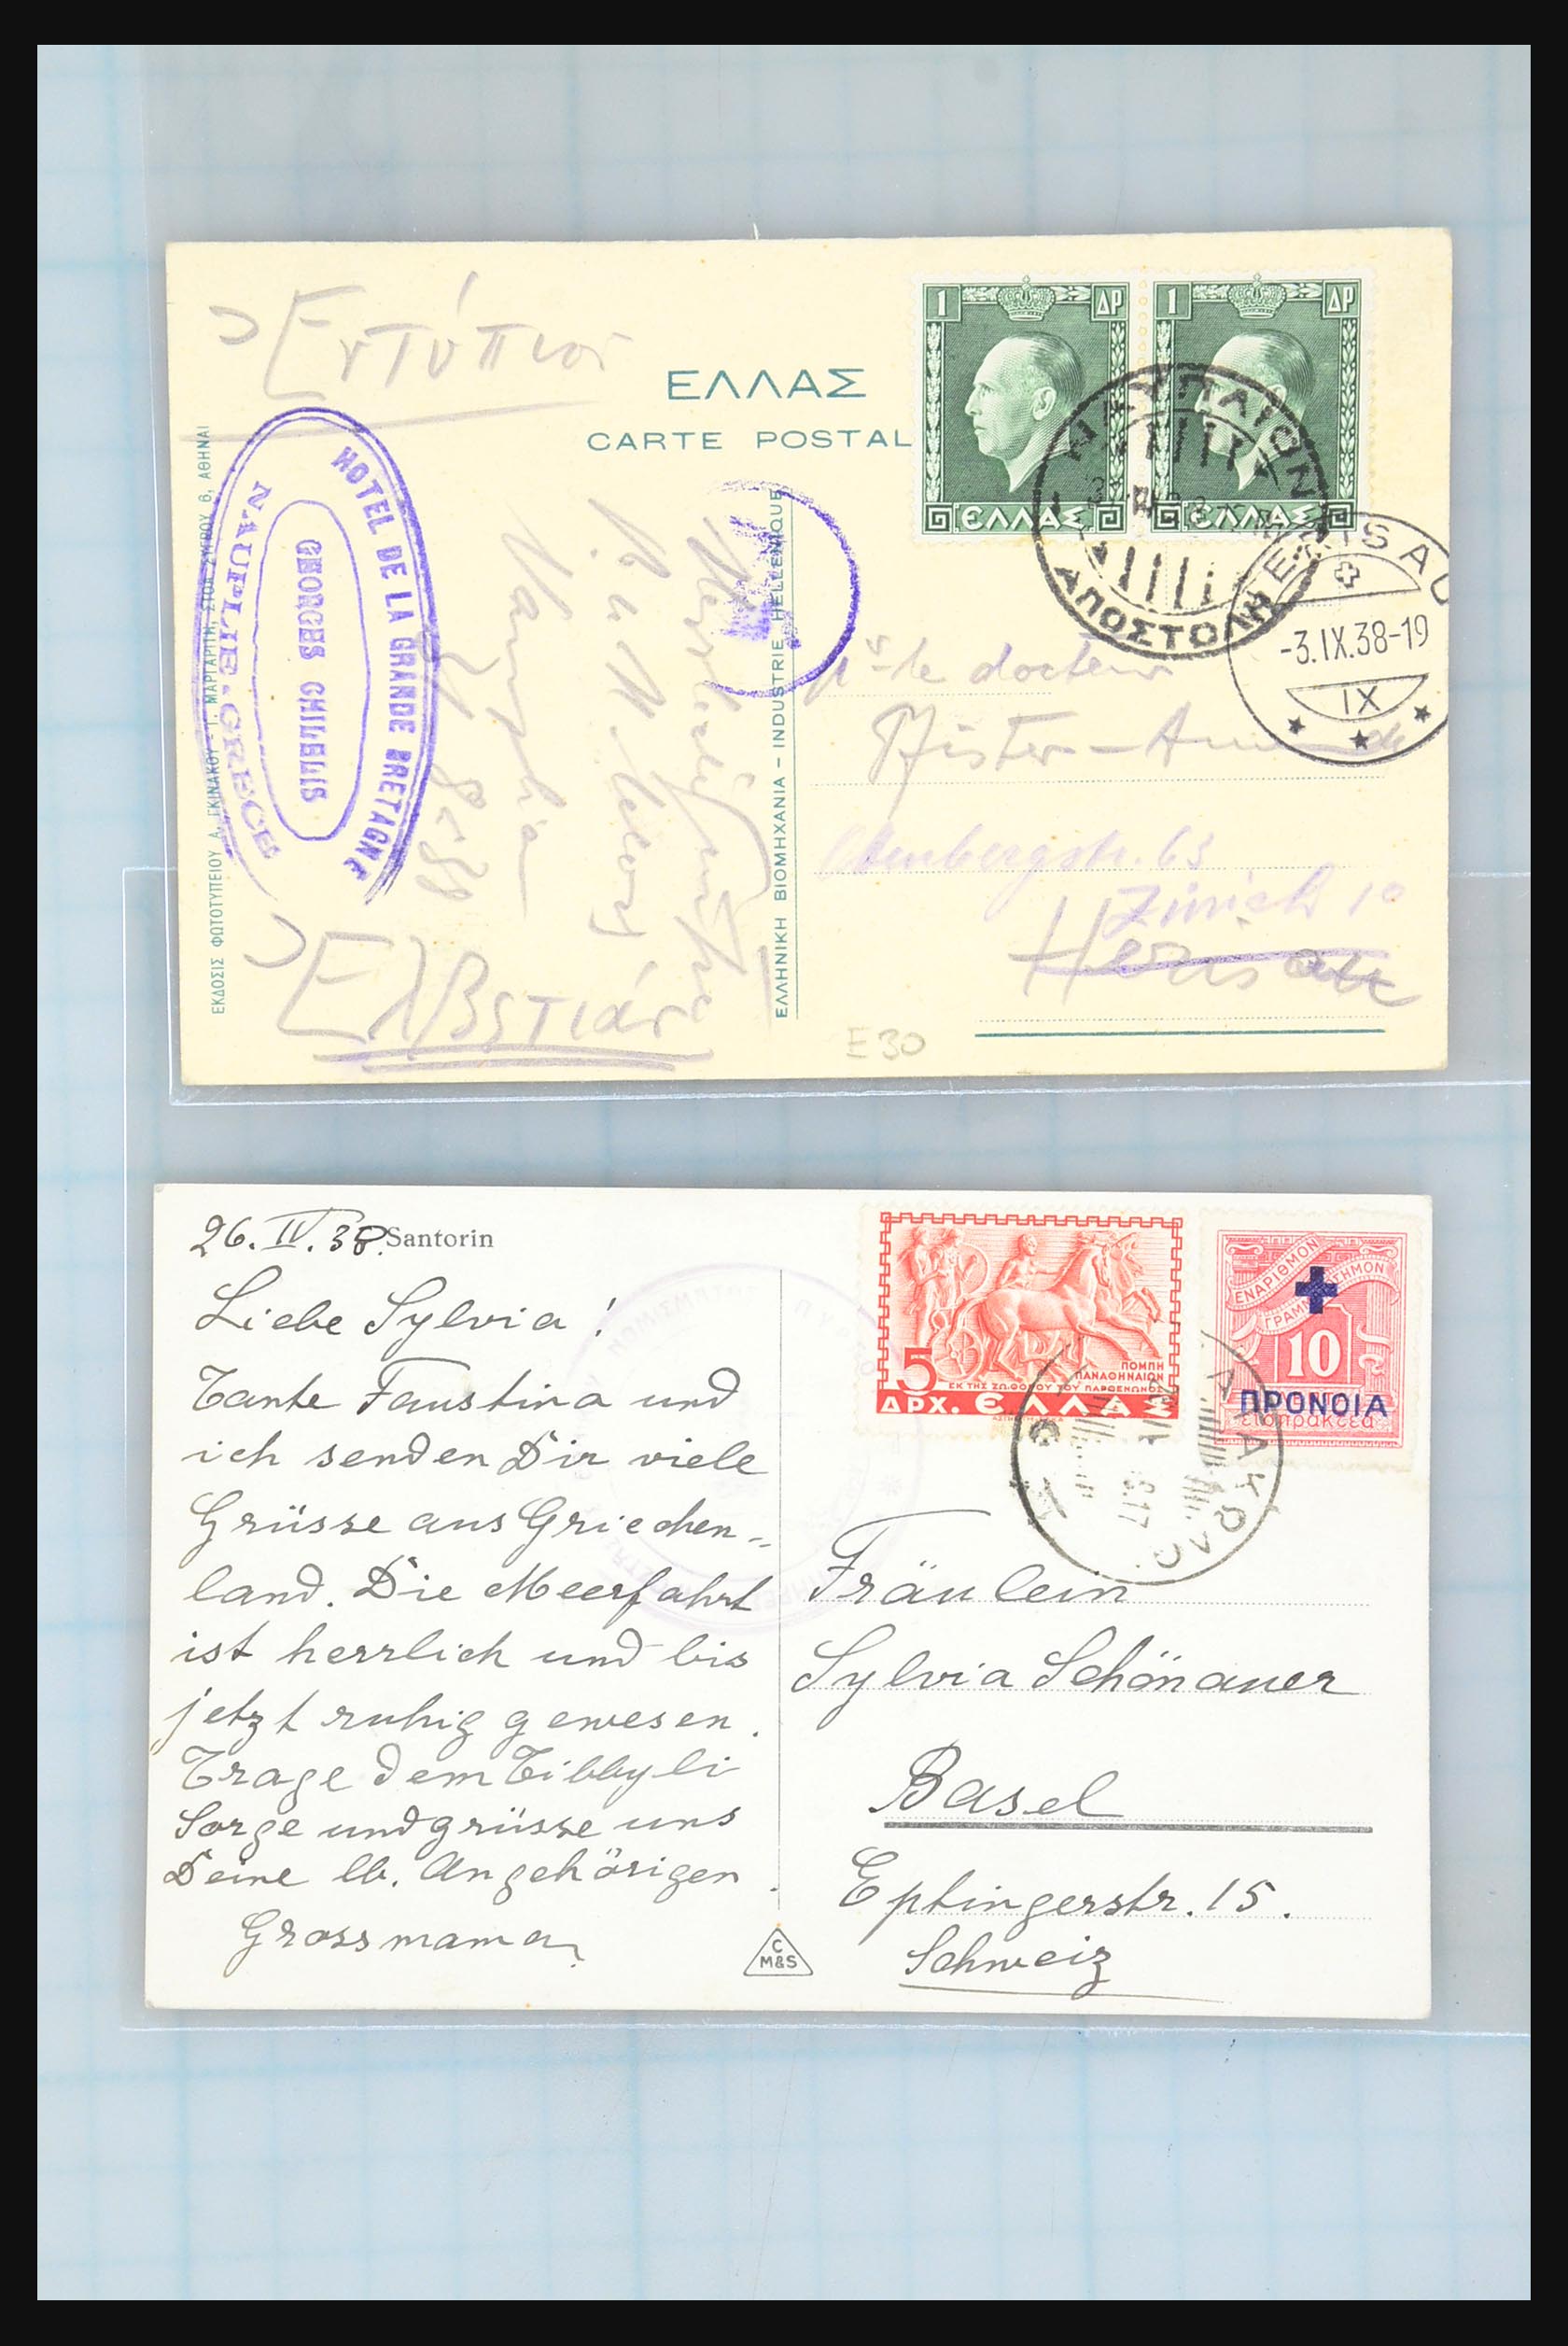 31358 185 - 31358 Portugal/Luxemburg/Griekenland brieven 1880-1960.